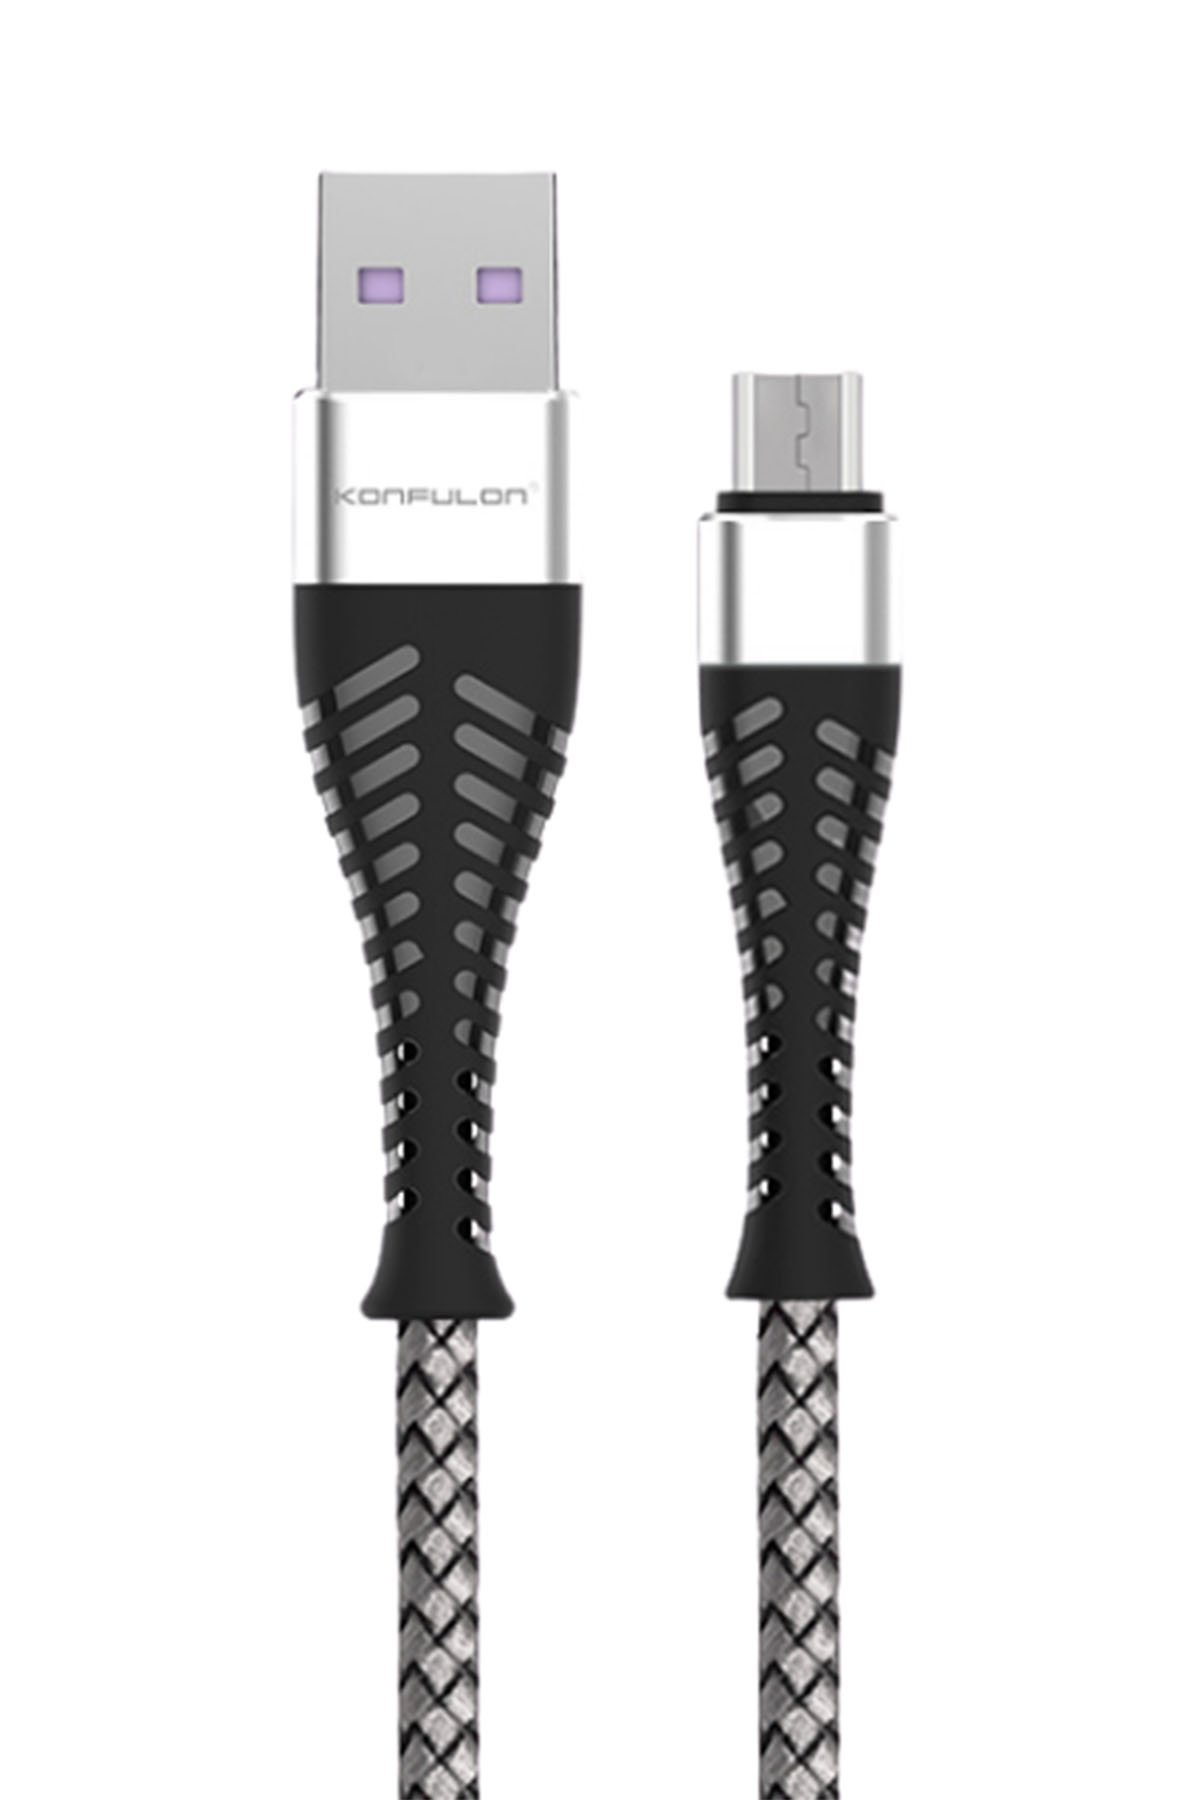 Konfulon C29 6 USB 3.0 Quick Masa Şarj Cihazı